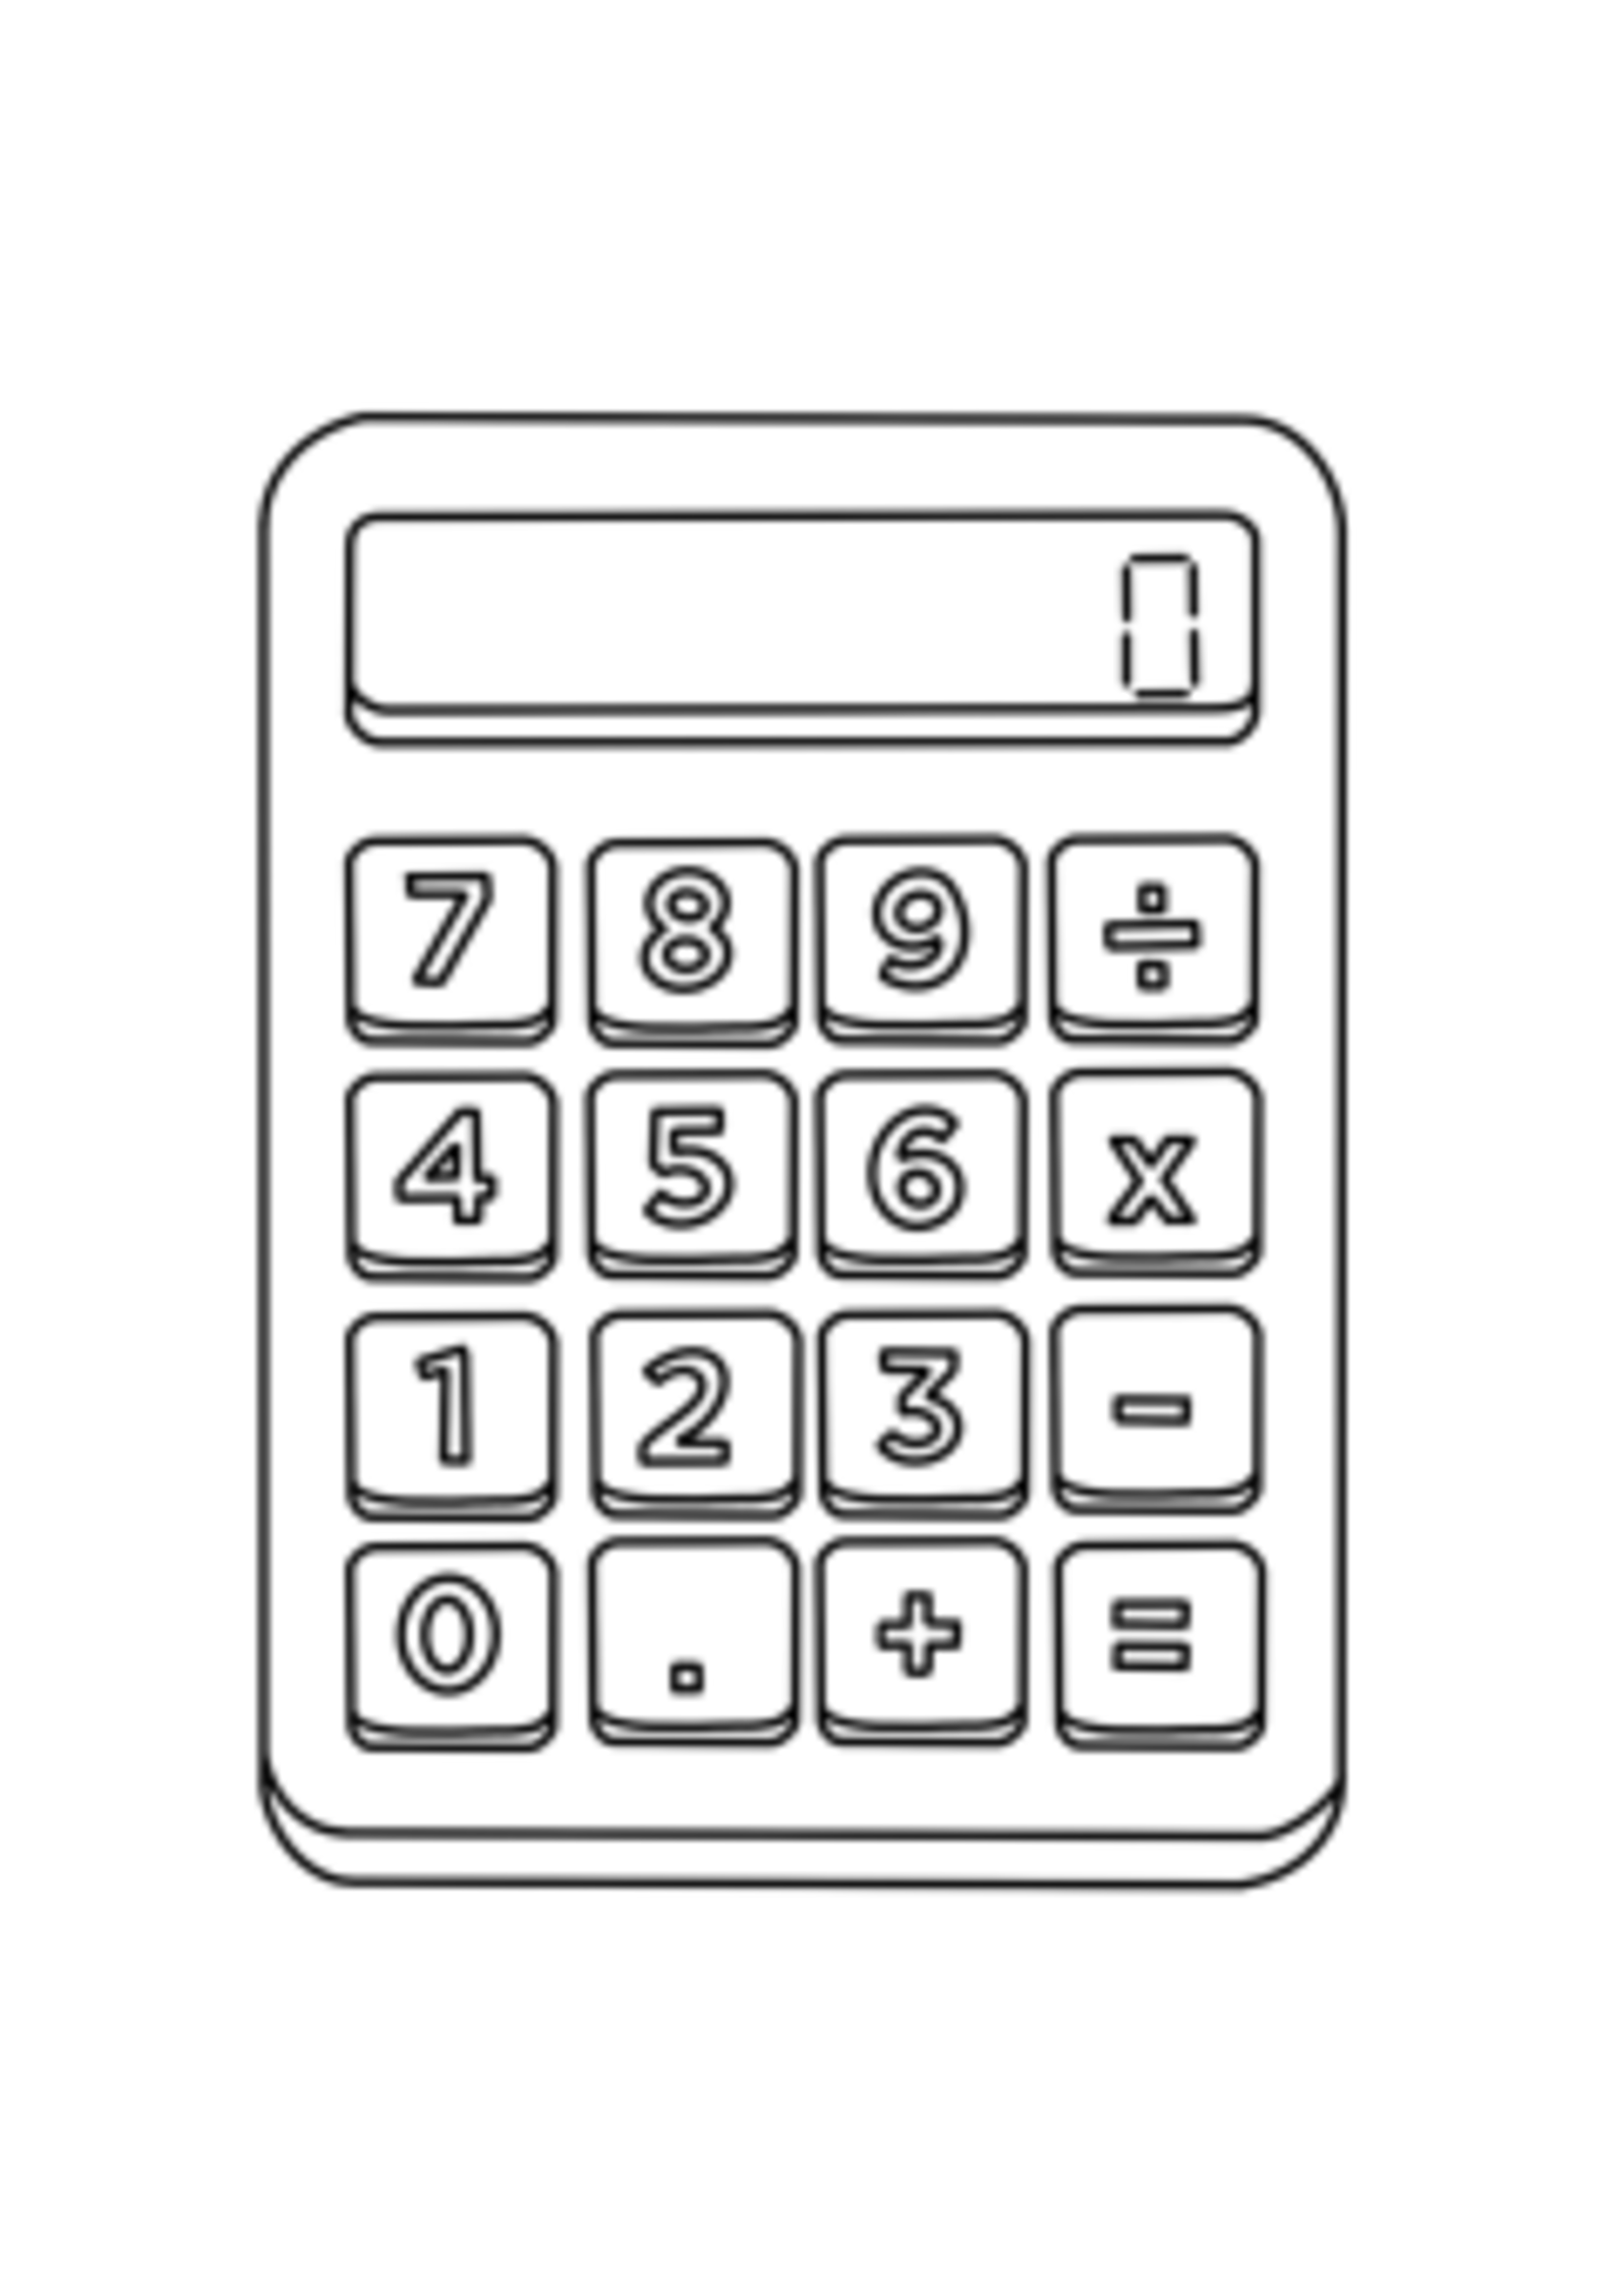 NON-UNIFORM CALCULATOR - Youth Football Kiosk Calculator